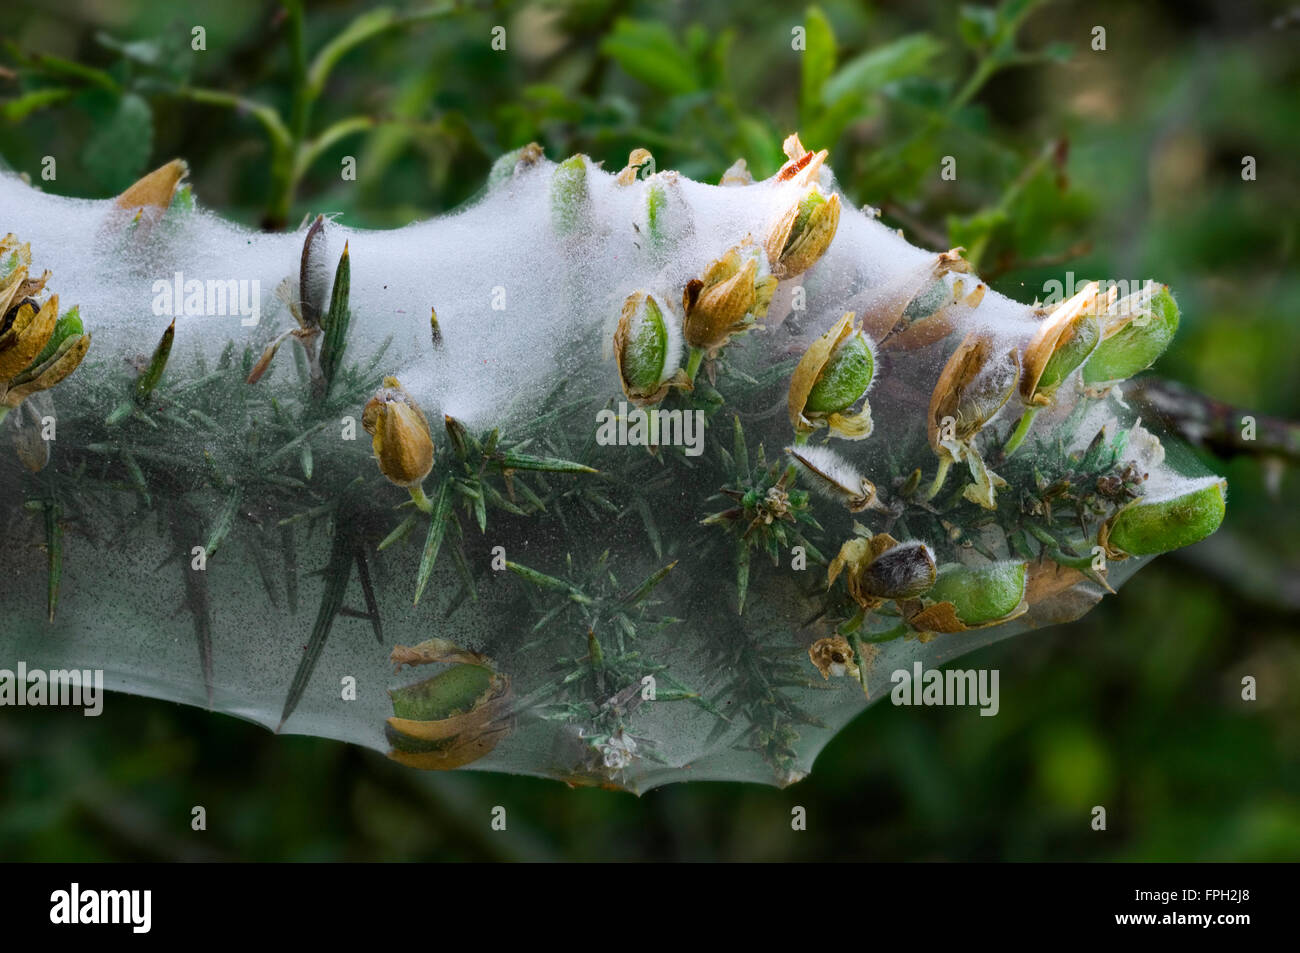 L'ajonc (Ulex europaeus) recouvert de Silken web larvaire communal de papillons de l'hermine (Yponomeutidae) Banque D'Images